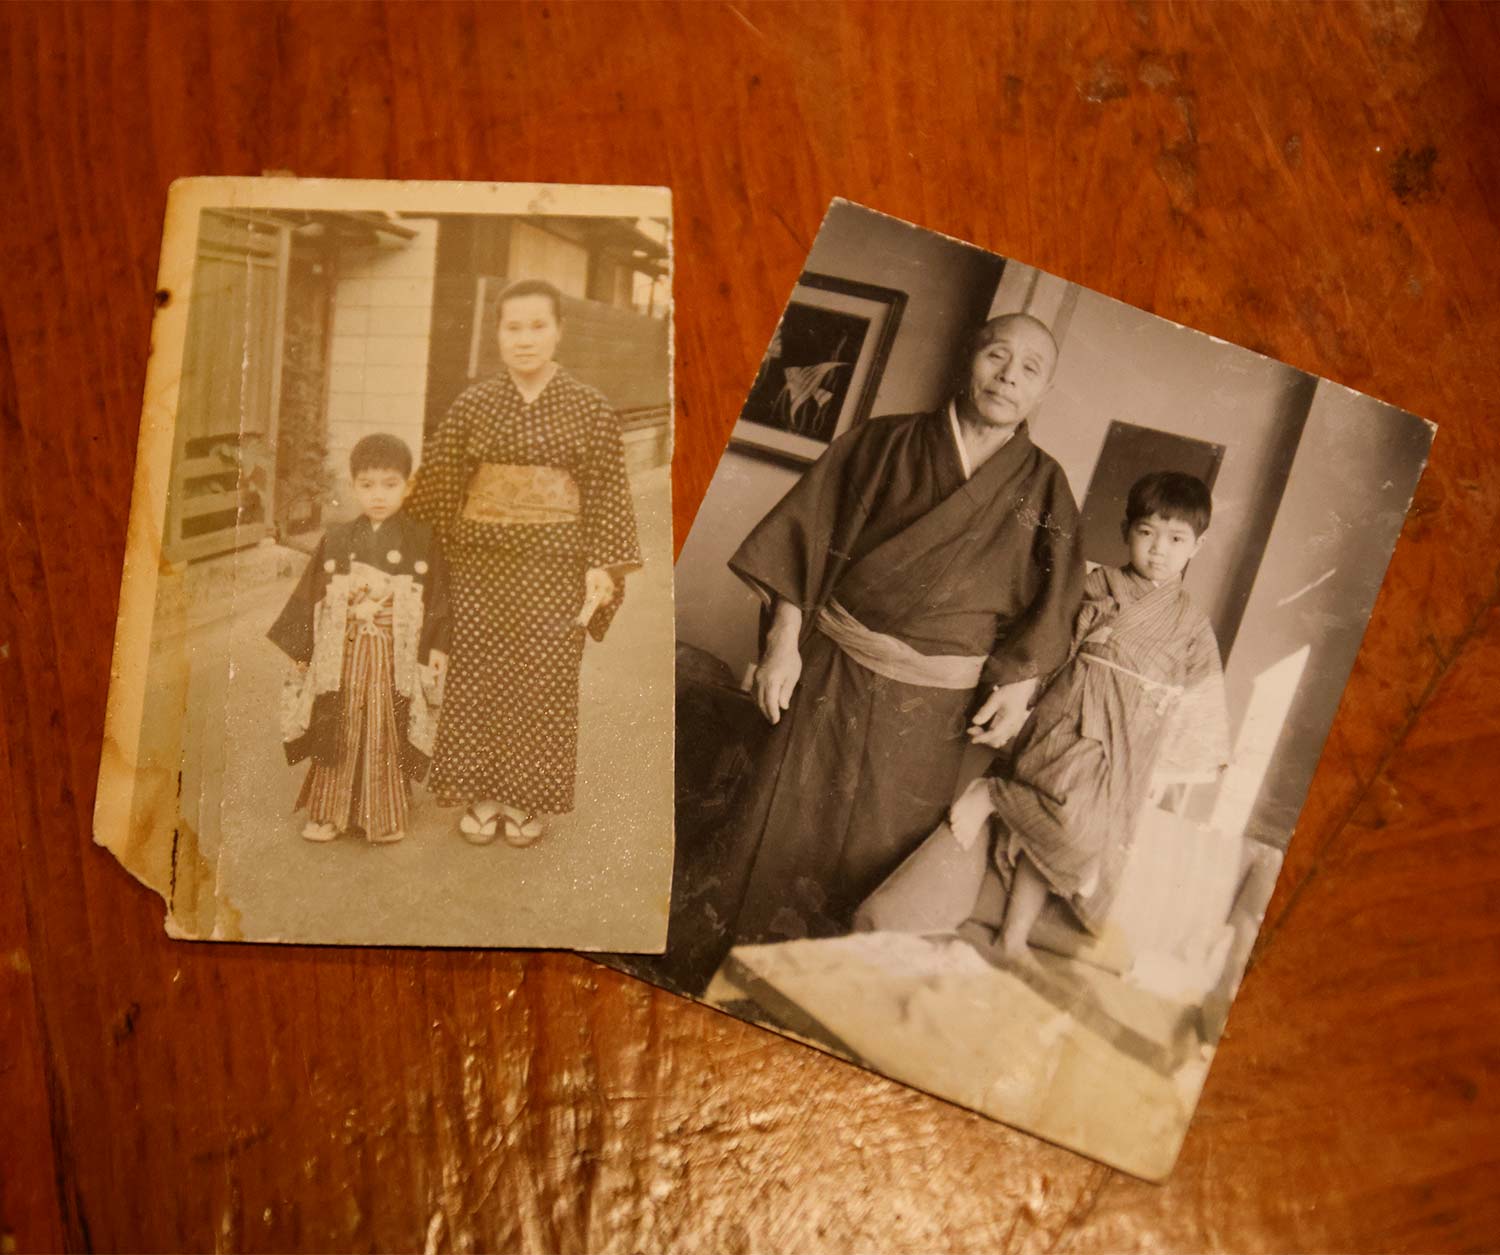 店で保管している古いアルバムにモノクロ写真が差し込まれていた。写っているのは渡邊さんの曽祖父母で『なだ一』の初代。